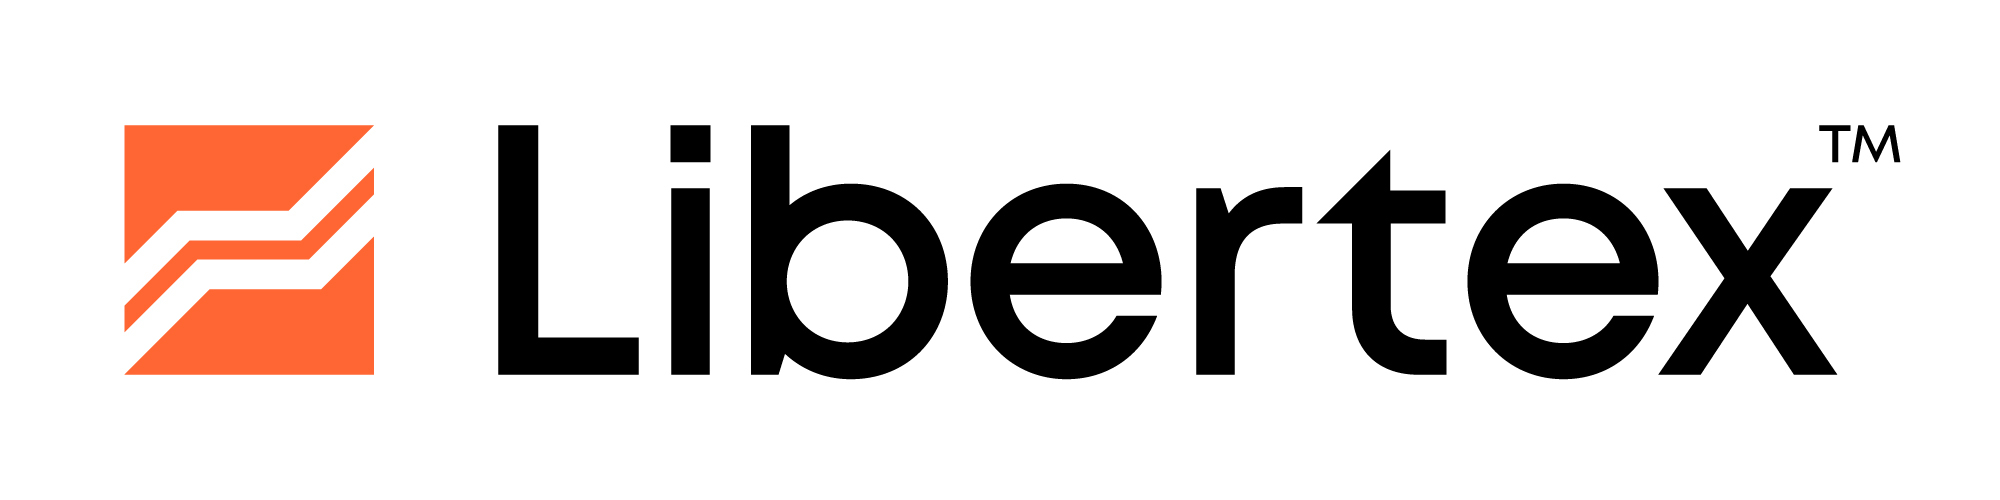 Libertex Logo Chainlink